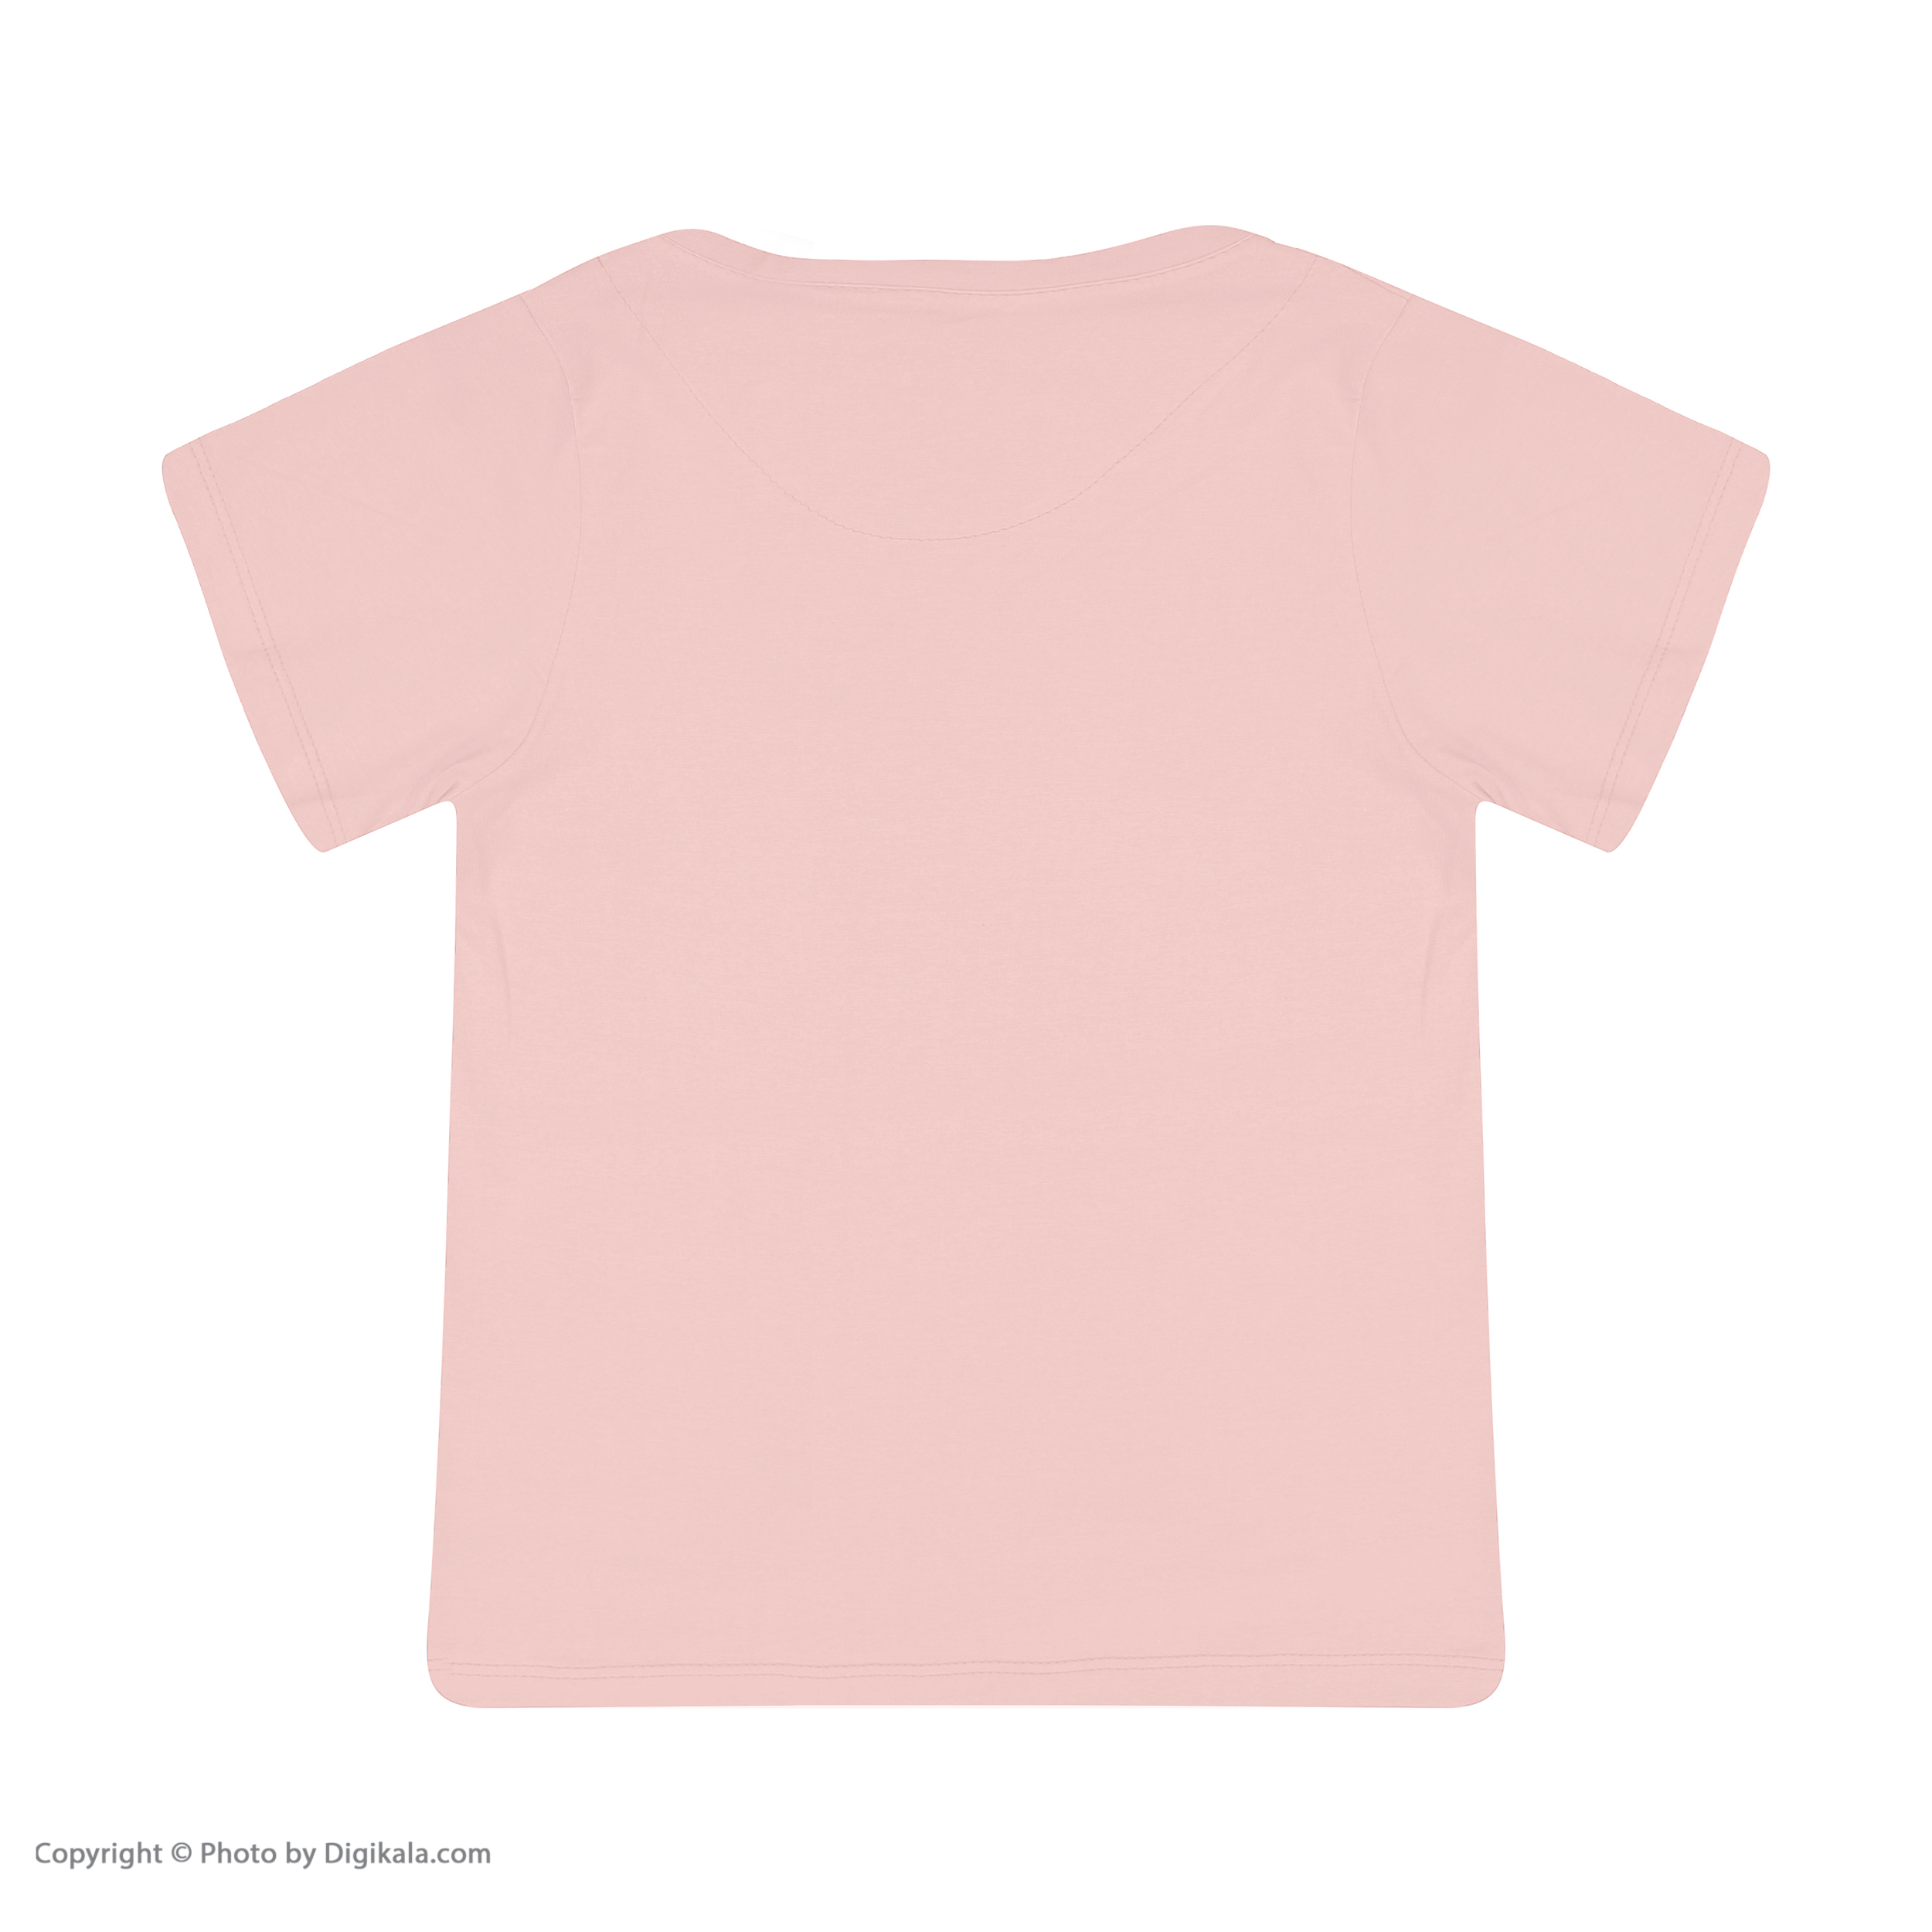 ست تی شرت و شلوار دخترانه مادر مدل 2041101-84 -  - 4